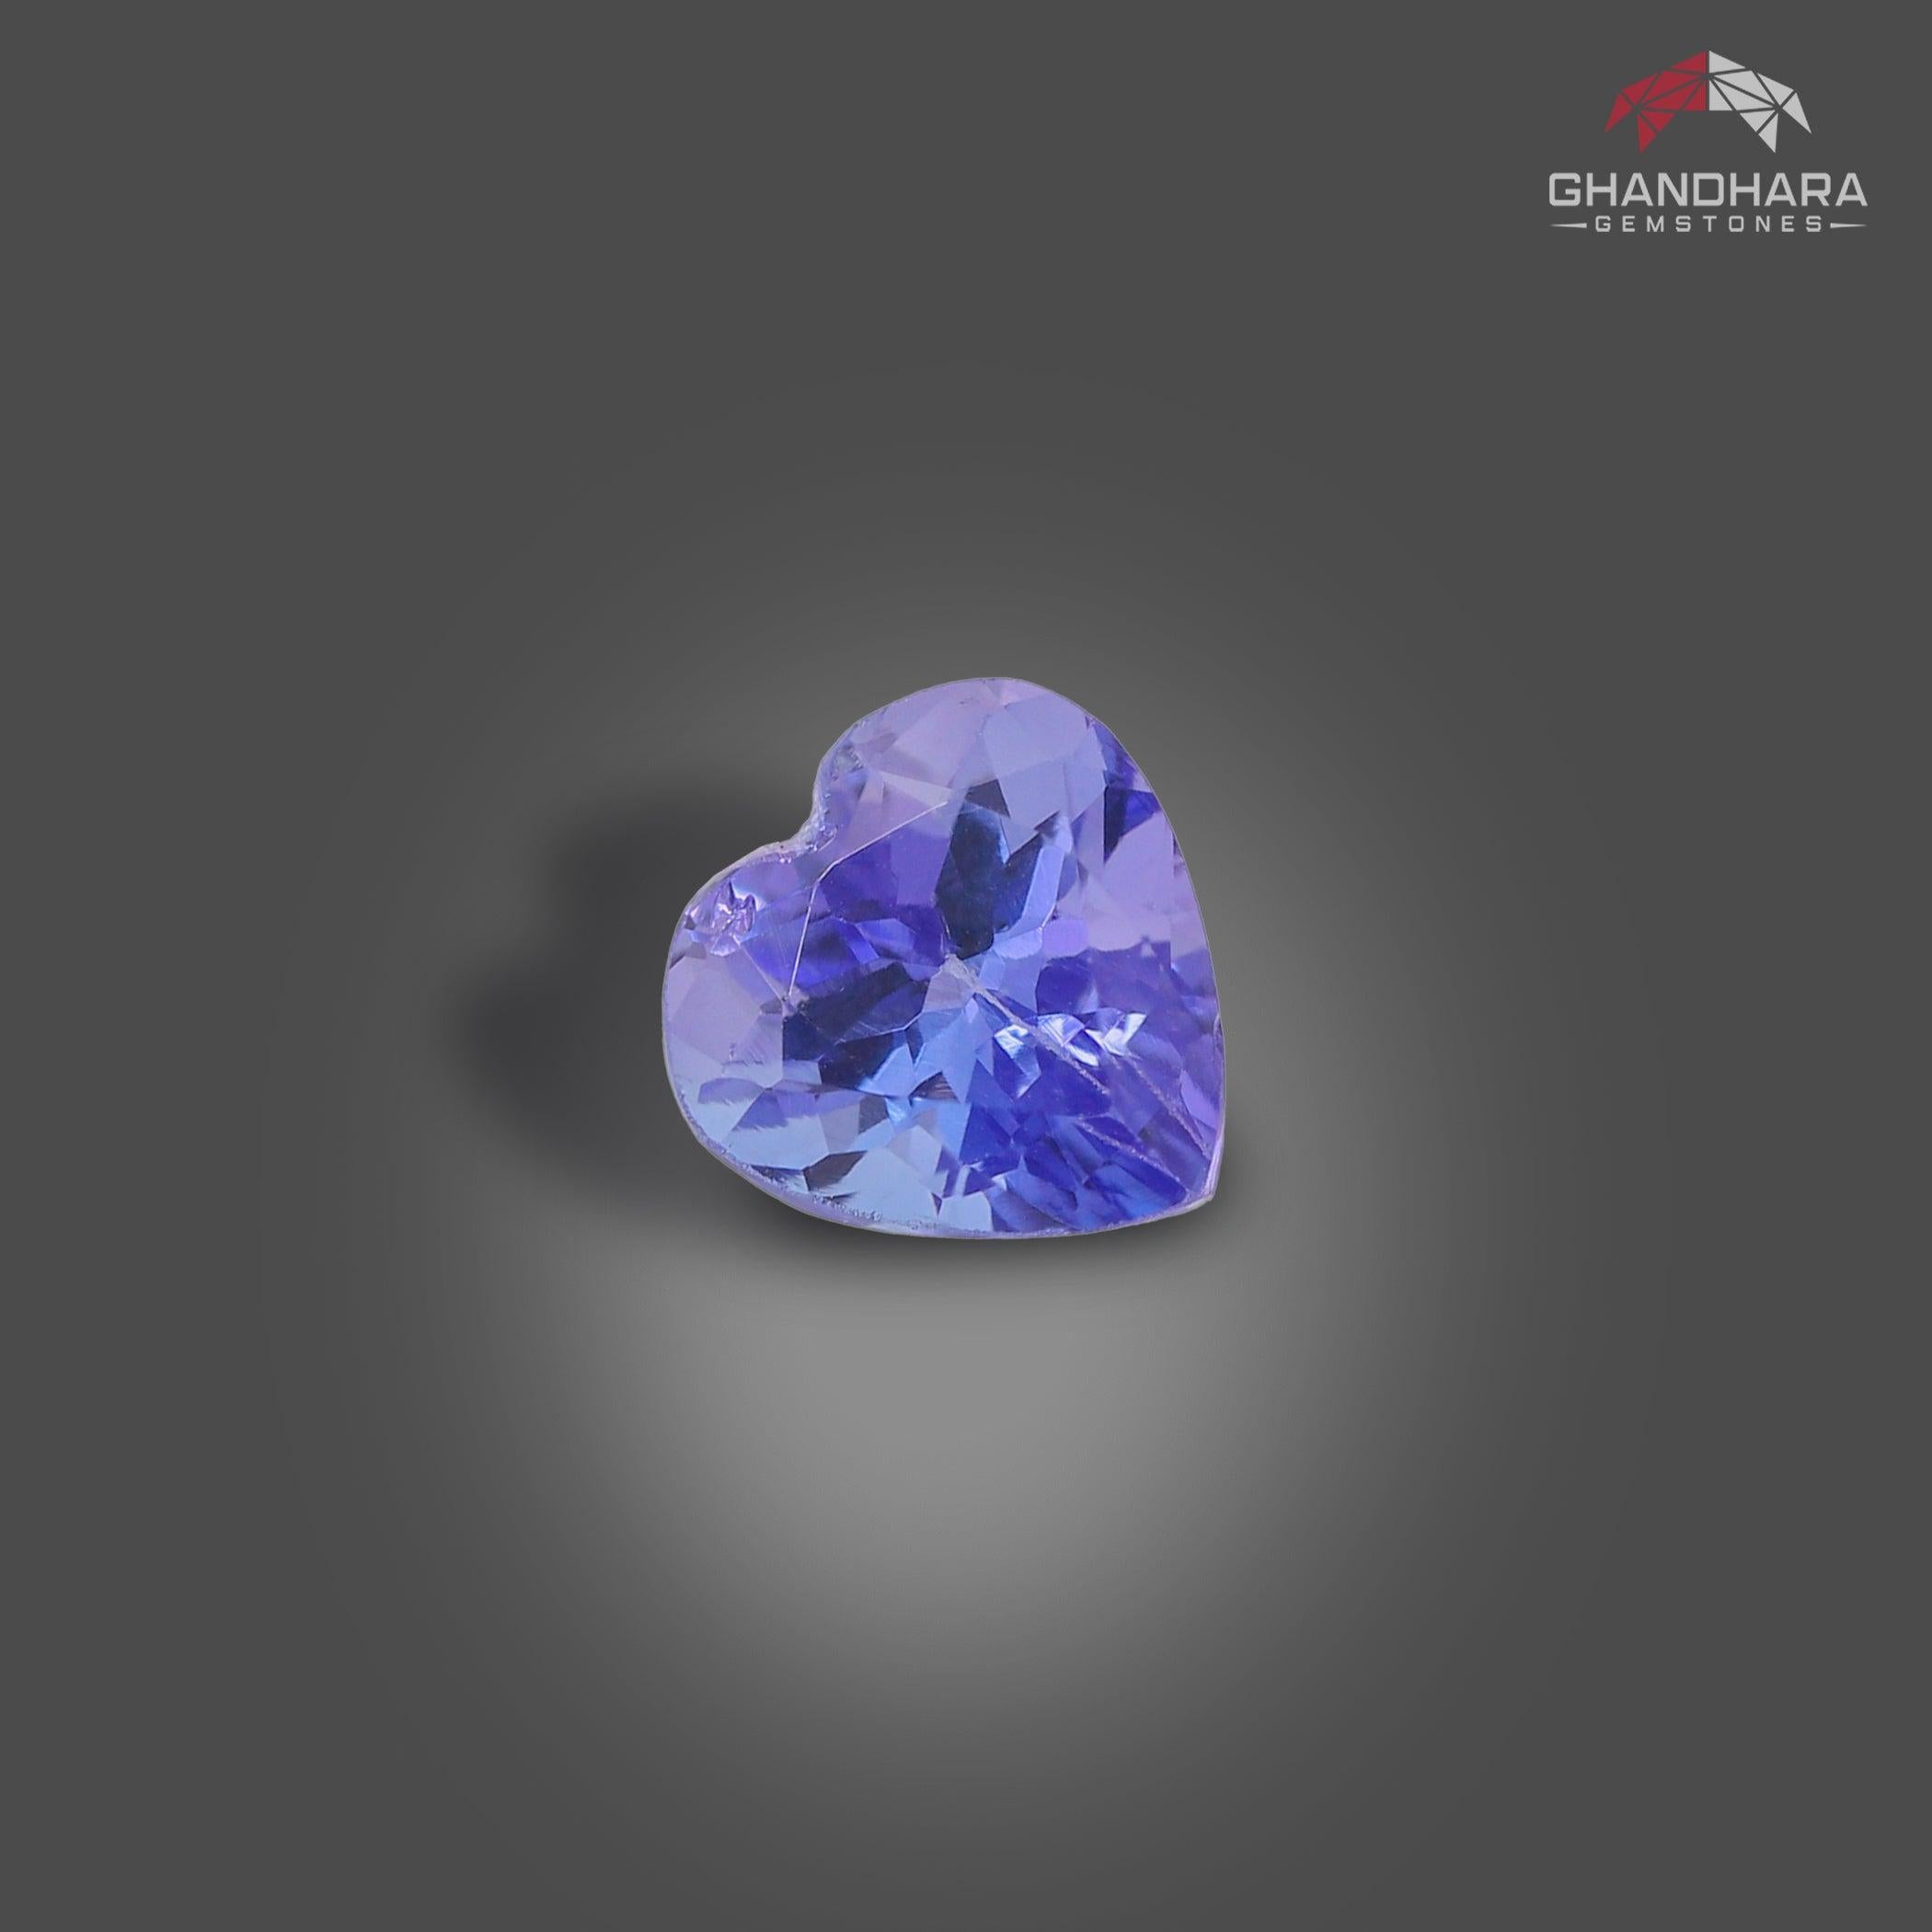 Tanzanite bleu violacé en forme de cœur de 1,30 carat provenant de Tanzanie a une magnifique coupe en forme de cœur, d'une couleur bleue incroyable. Une grande brillance. Cette pierre précieuse est d'une clarté totale de VVS.

 

Informations sur le